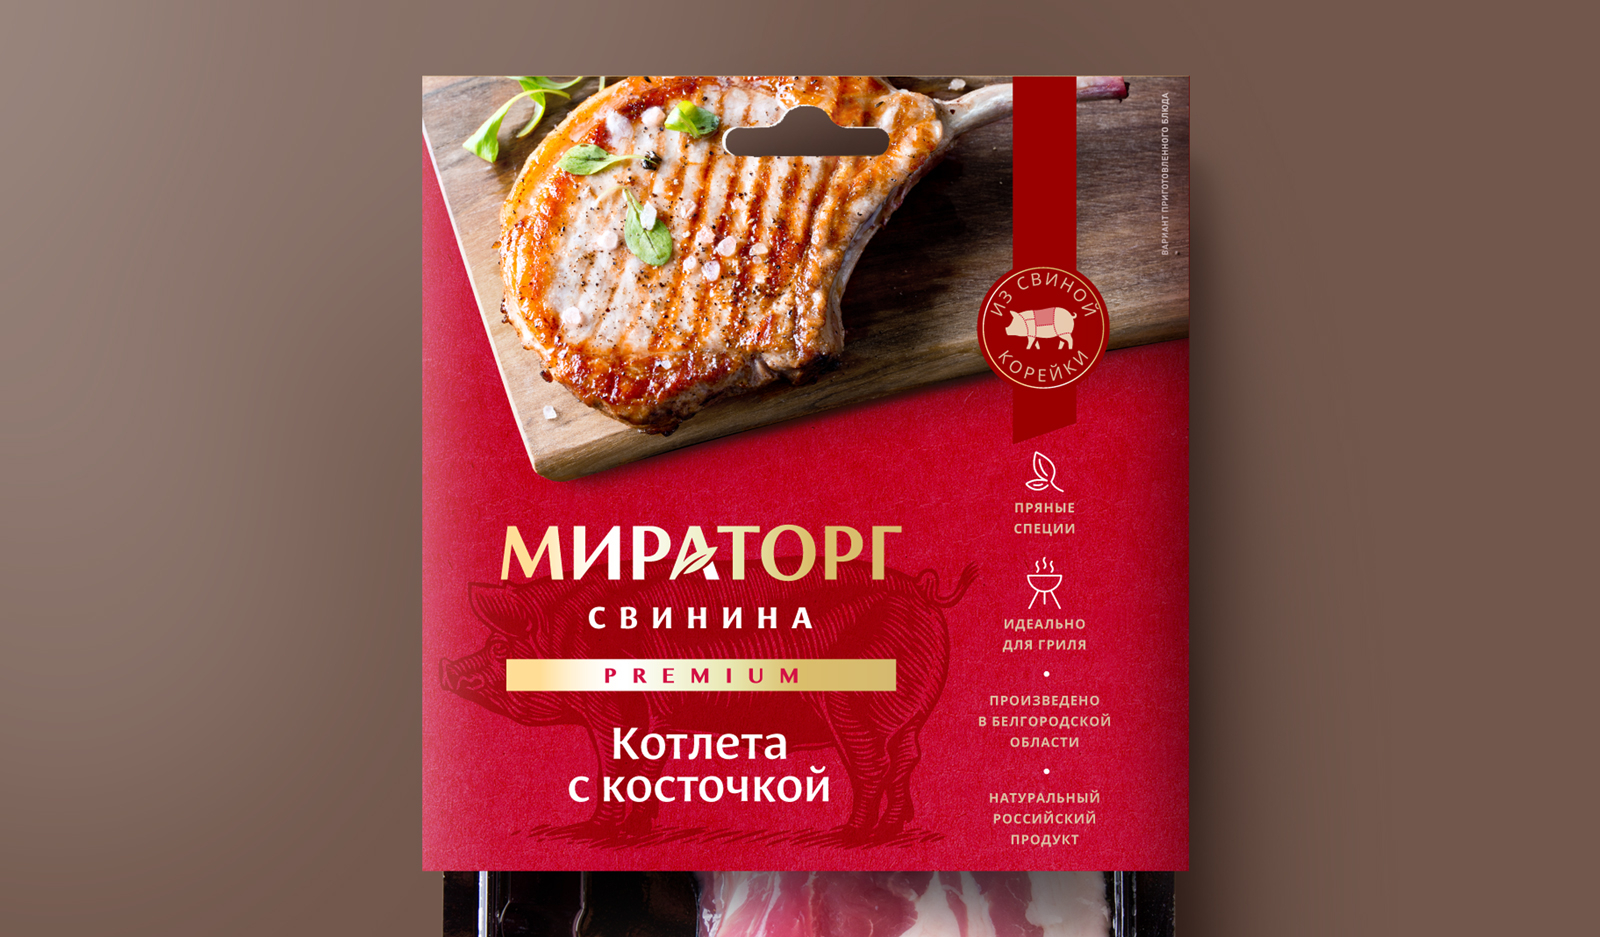 Дизайн упаковки свинины Мираторг